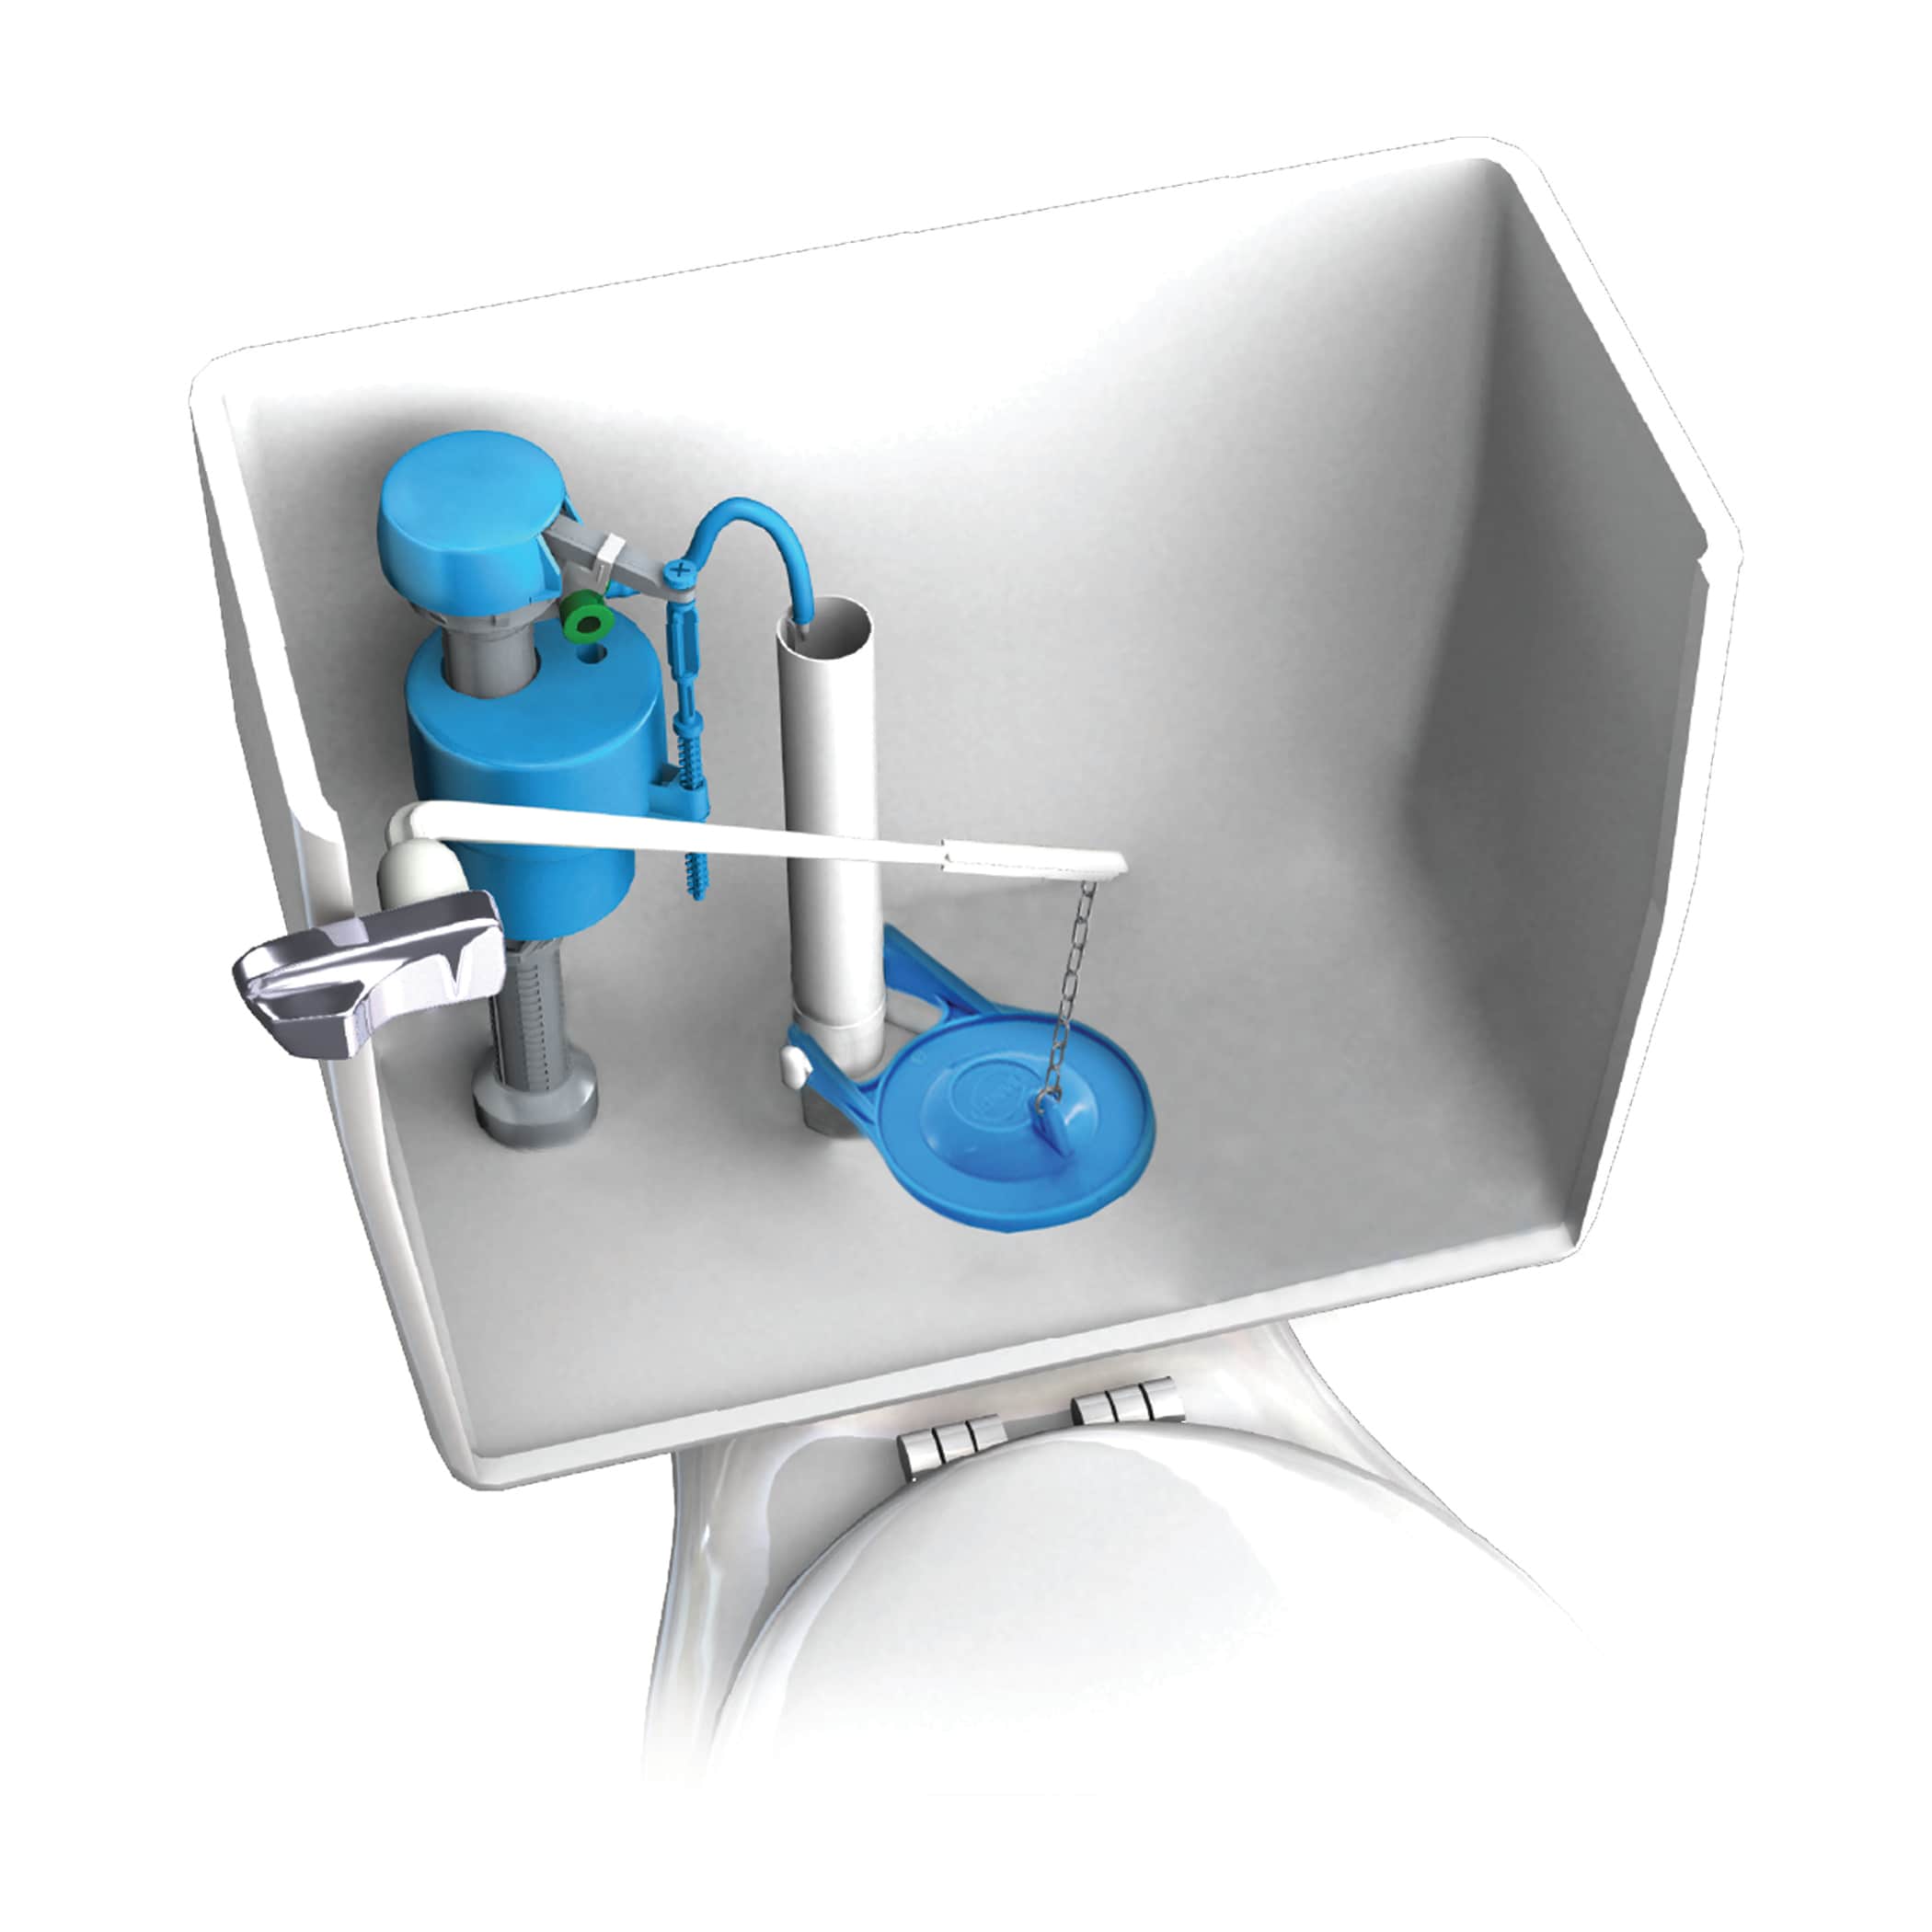 DANCO Water-Saving Toilet Total Repair Kit with Dual Flush Valve